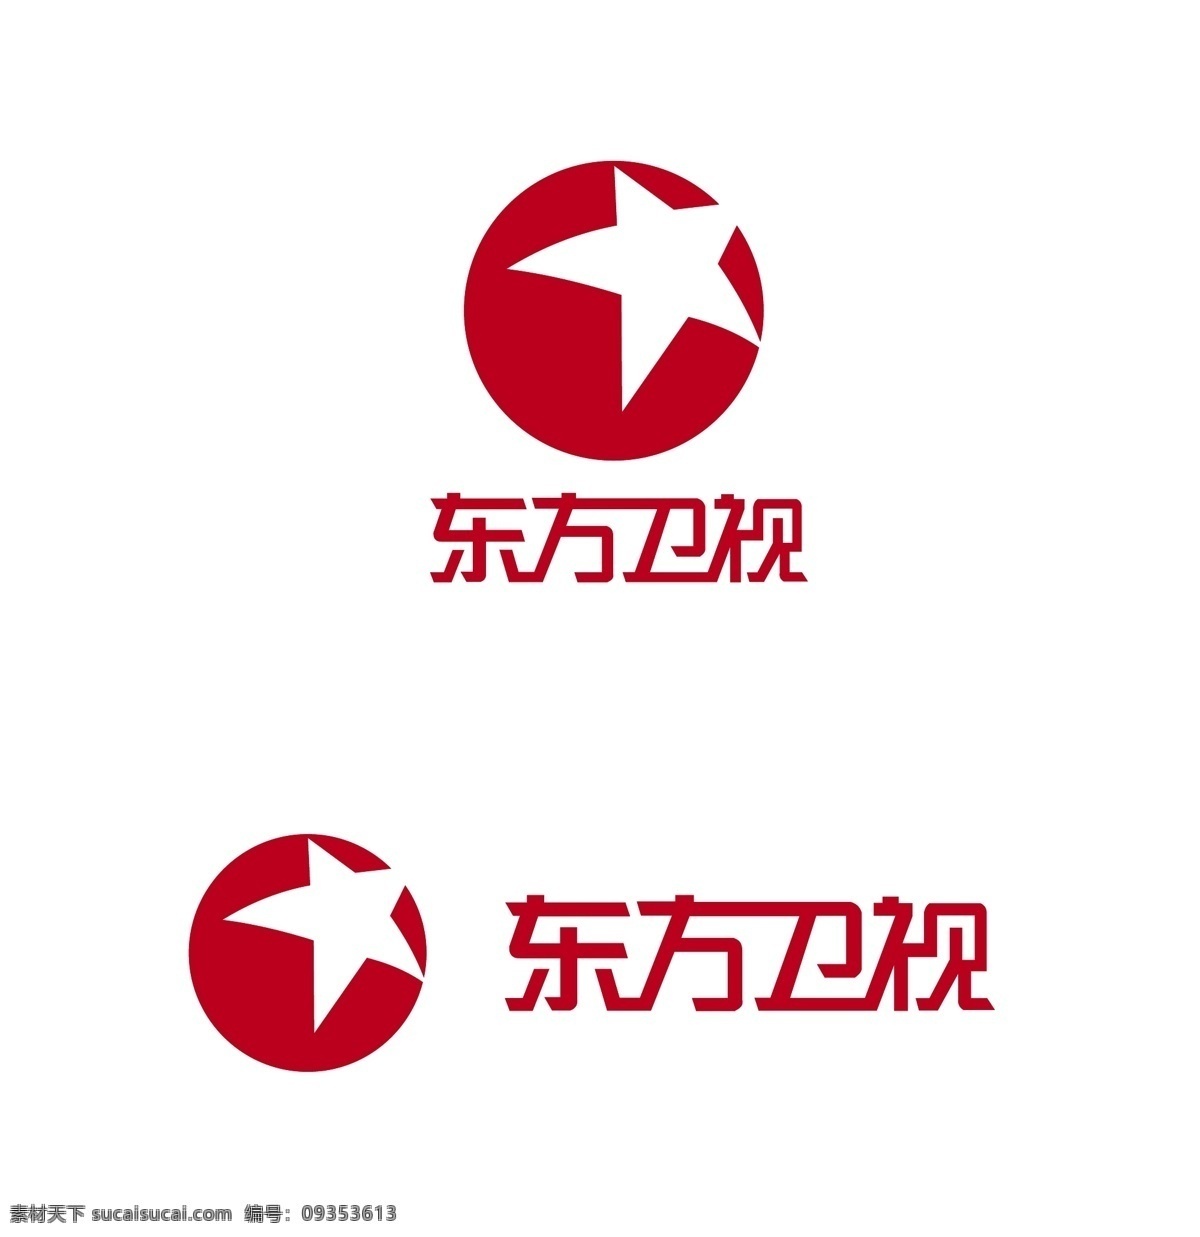 logo 标识标志图标 标志 电视台 红色 企业 上海 五角星 东方卫视 矢量 模板下载 psd源文件 logo设计